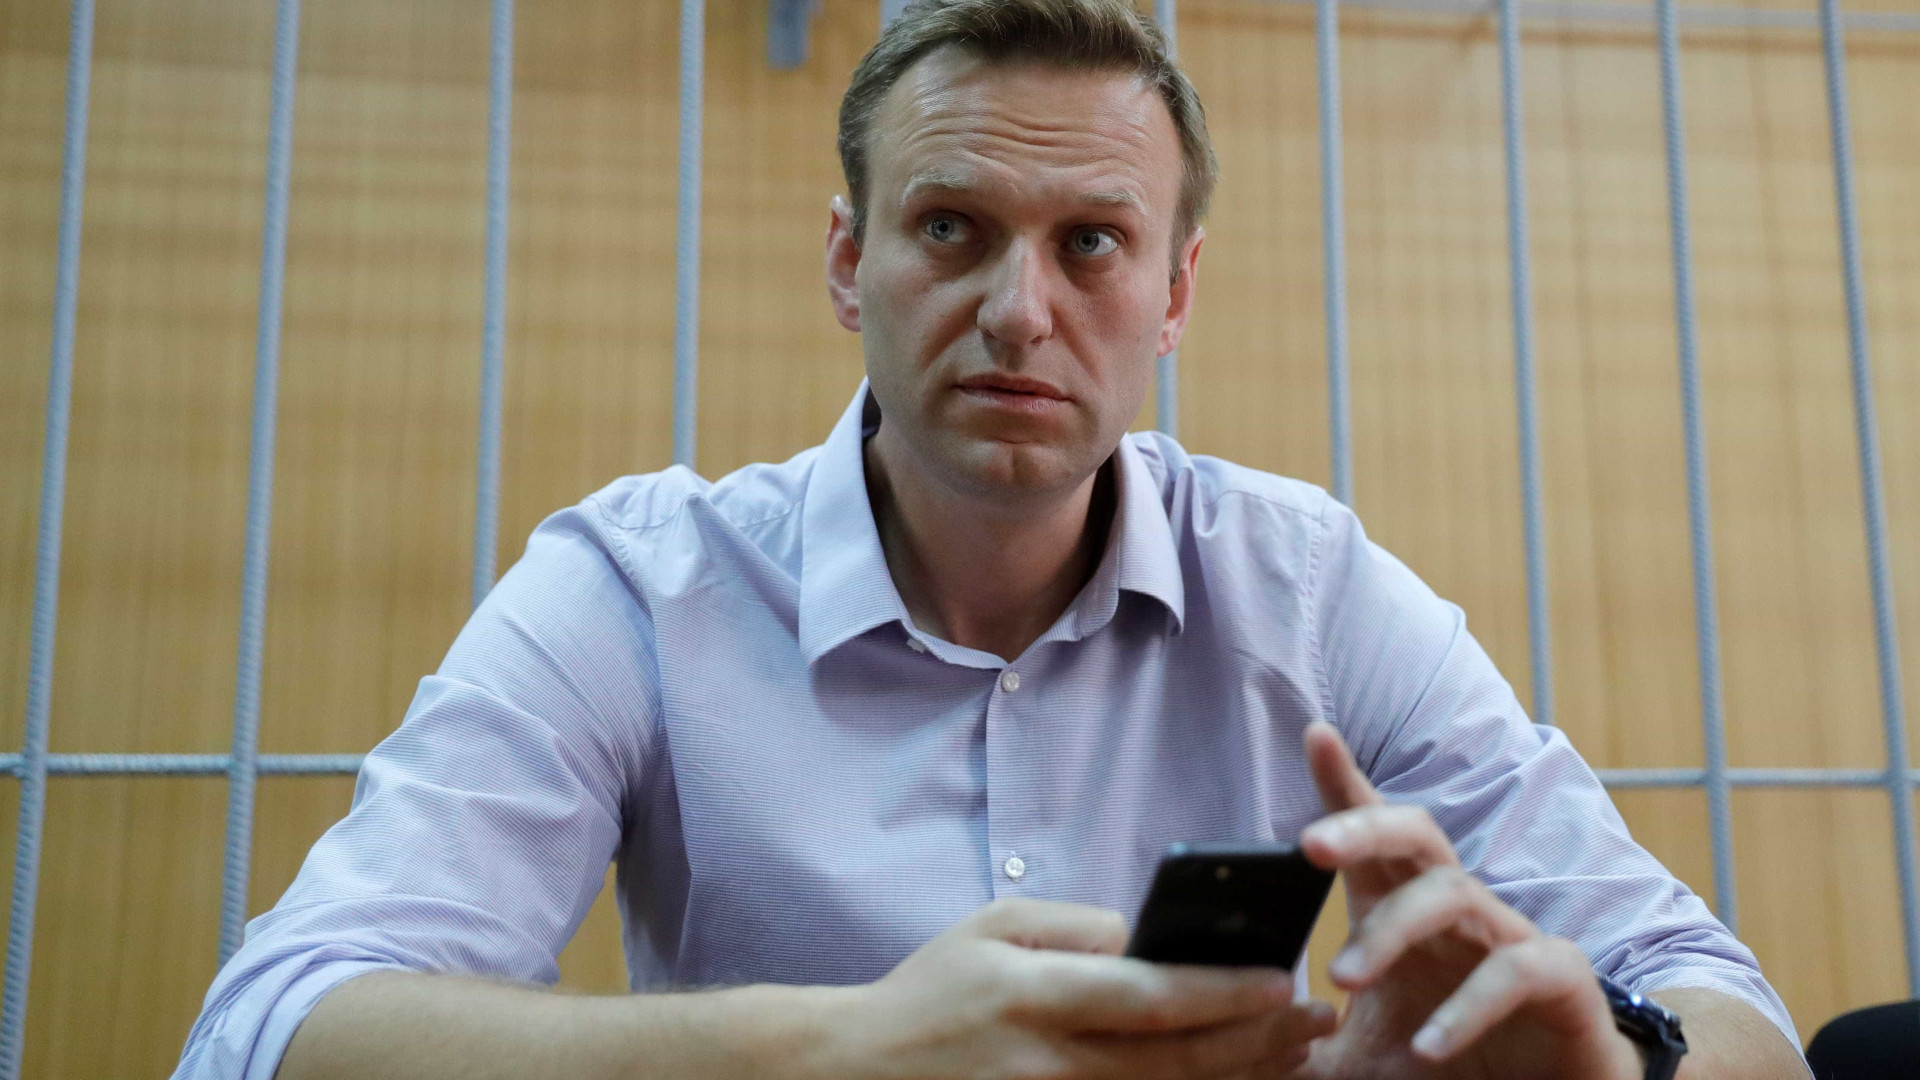 Corpo de Navalni apresenta sinais de hematomas e convulsões, diz jornal